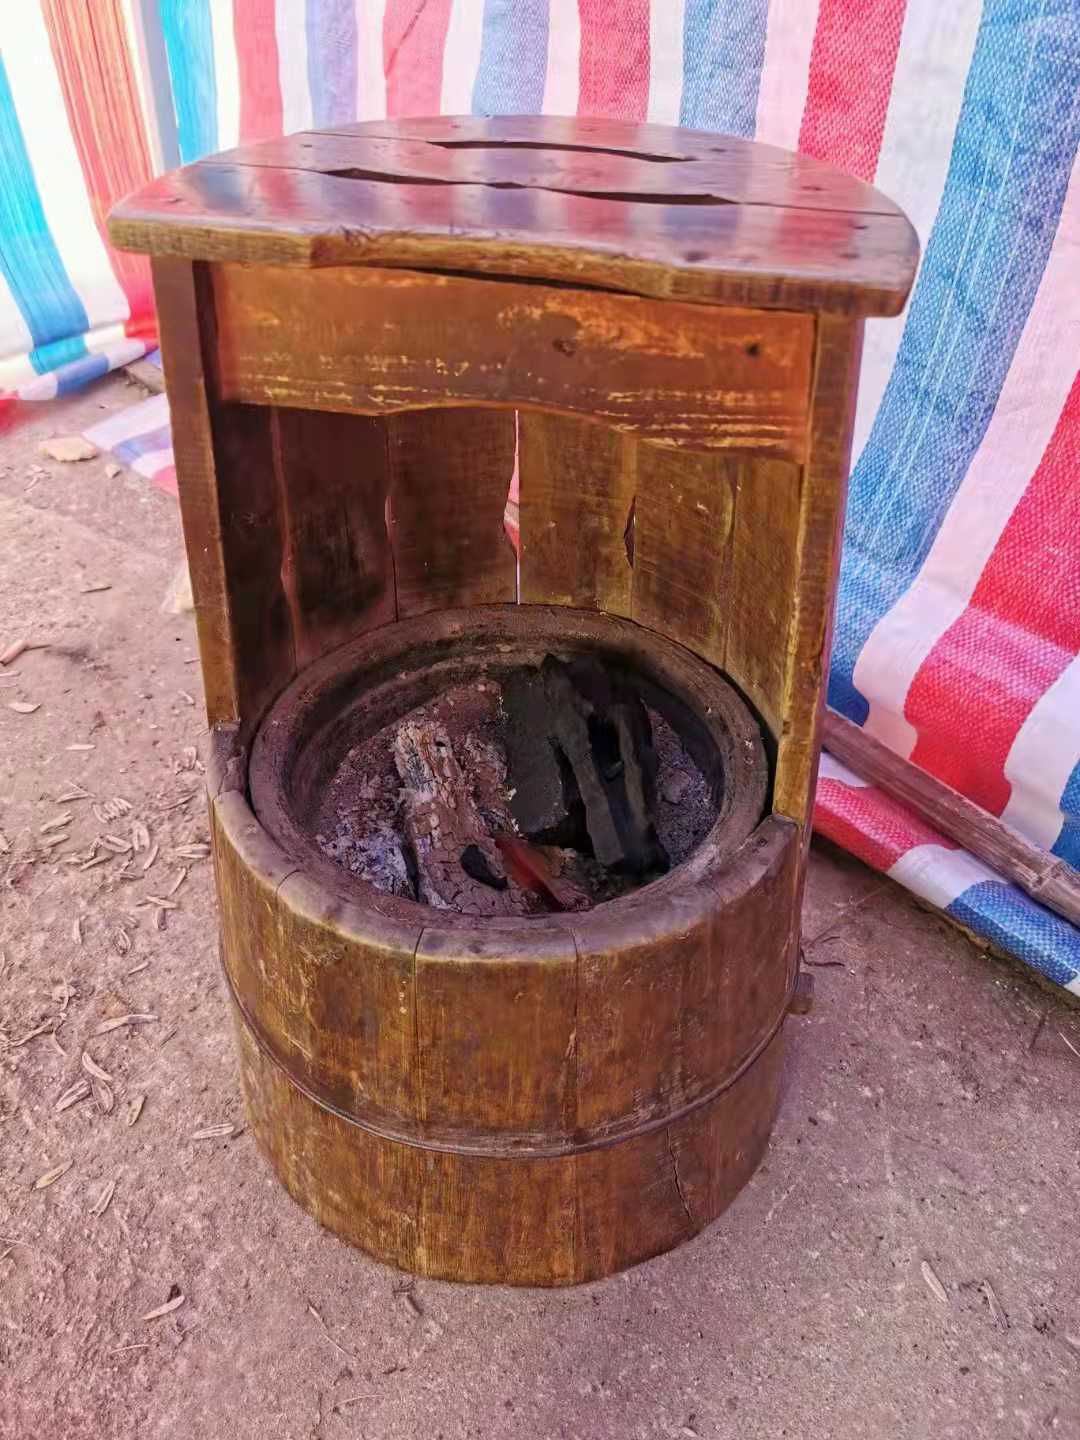 烤火坐着用木桶图片